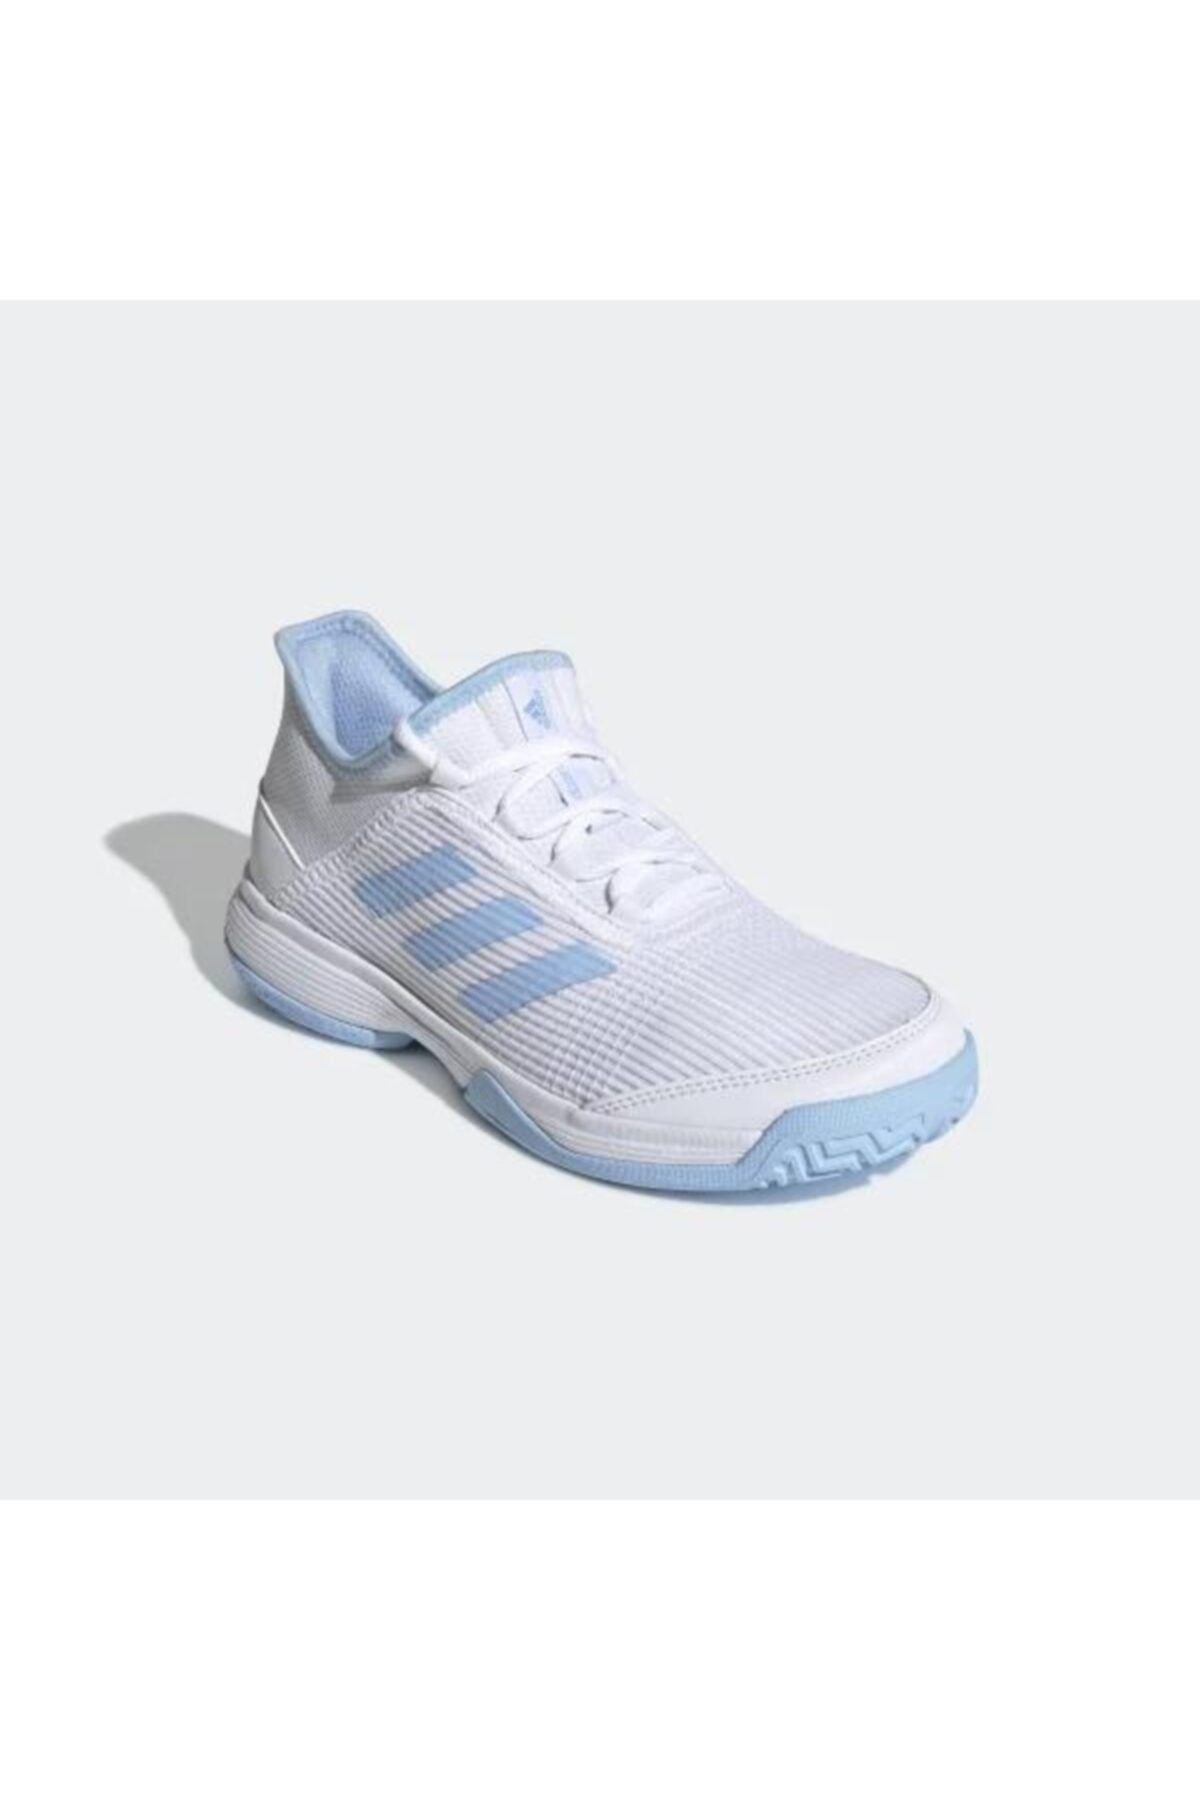 adidas G26837 Adizero Beyaz Çocuk Tenis Ayakkabısı